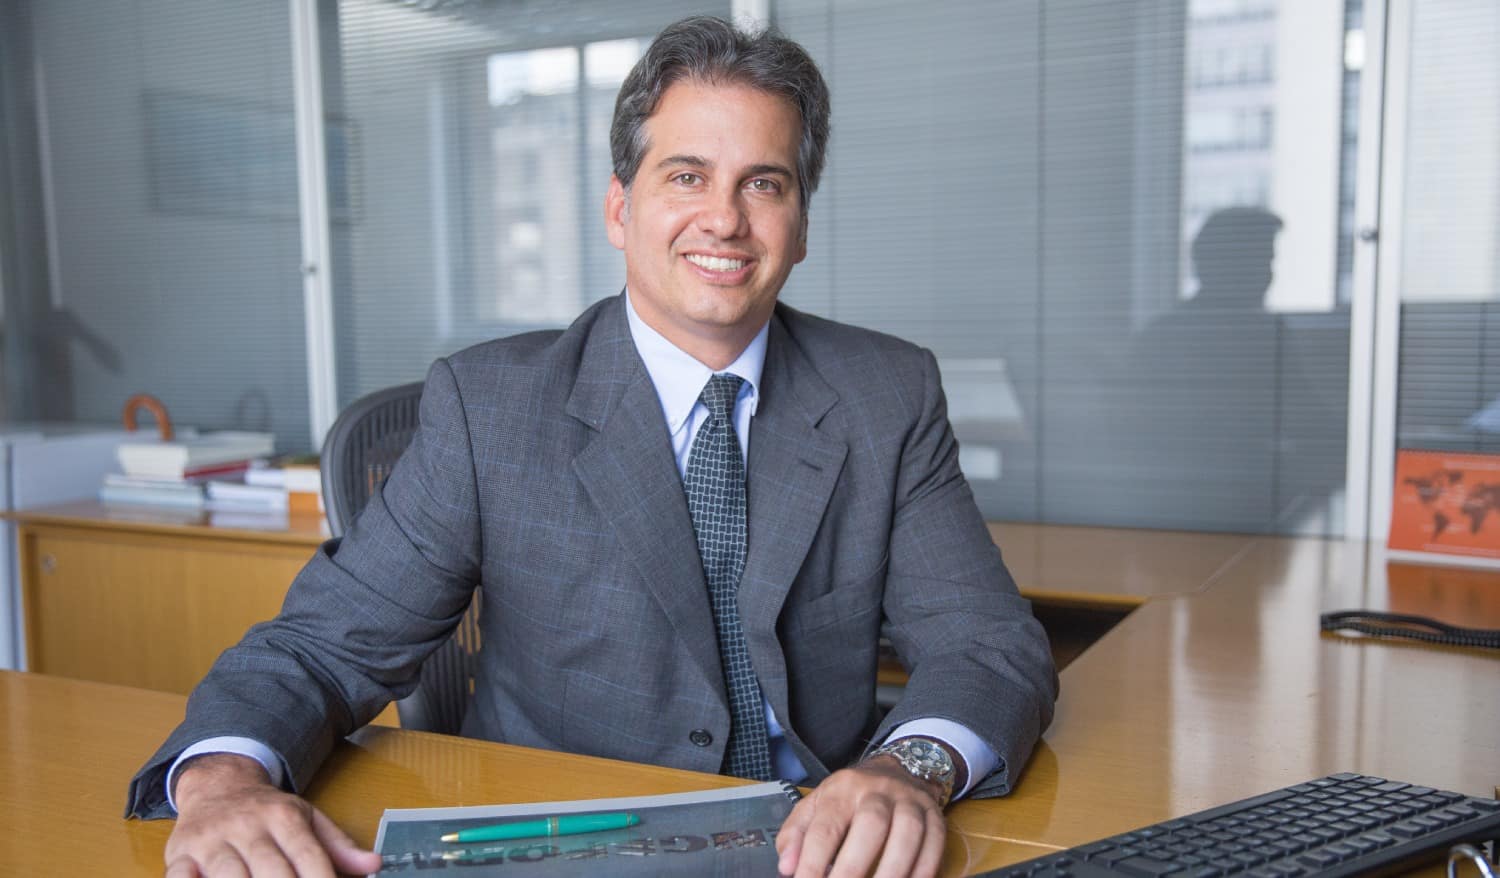 A imagem é uma foto do executivo André Abucham, CEO da empresa Engeform. Ele está usando terno social cinza e está sentado em uma mesa de escritório com as mãos recostadas.